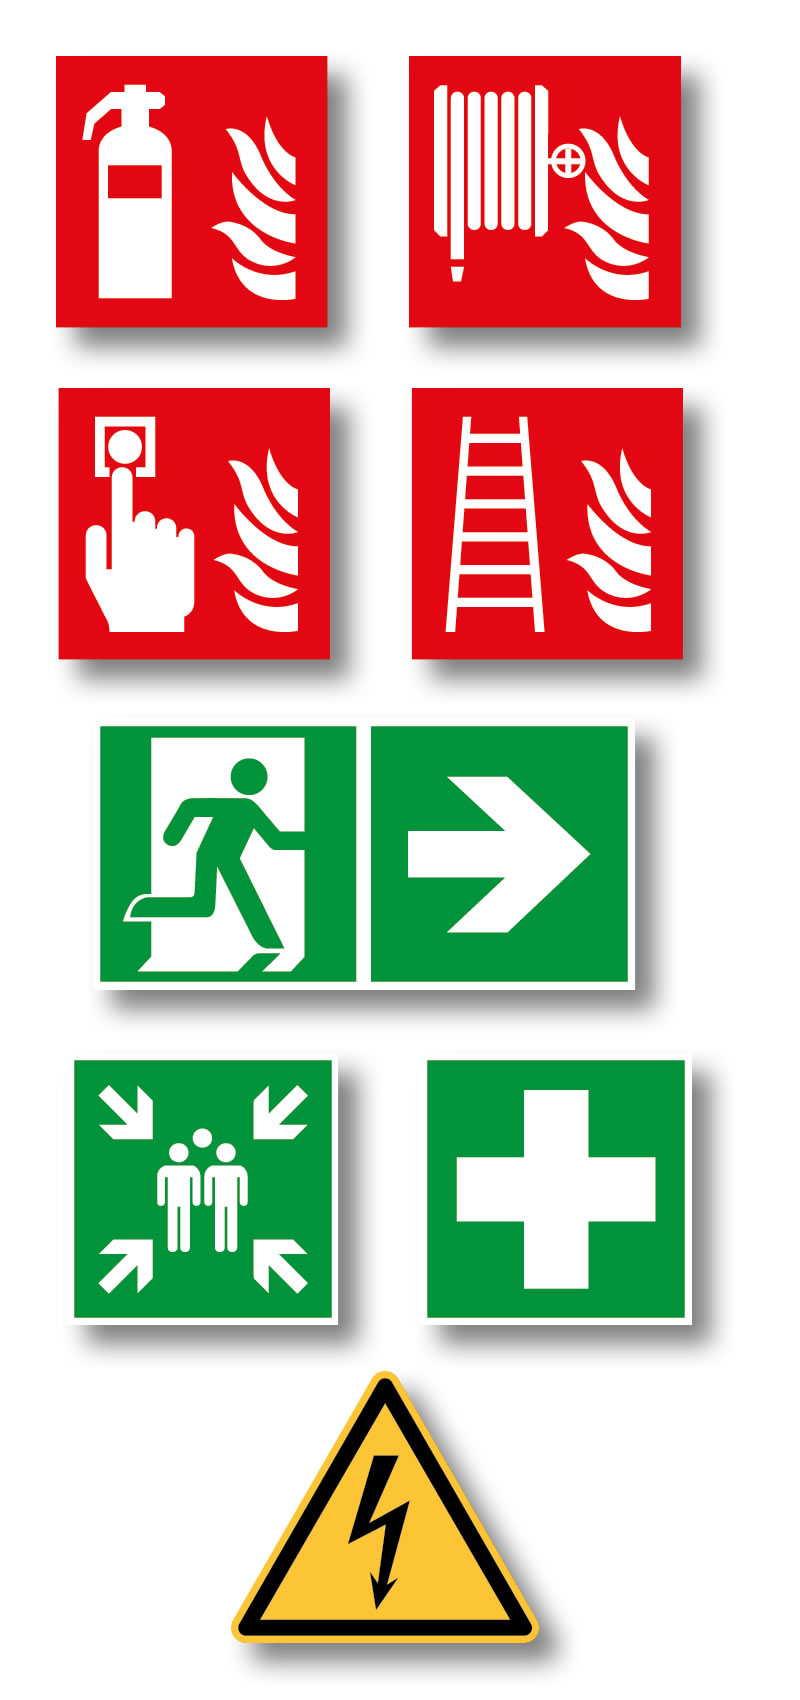 pictogrammes de sécurité : pictogrammes d'évacuation, pictogramme d'extincteur, etc.